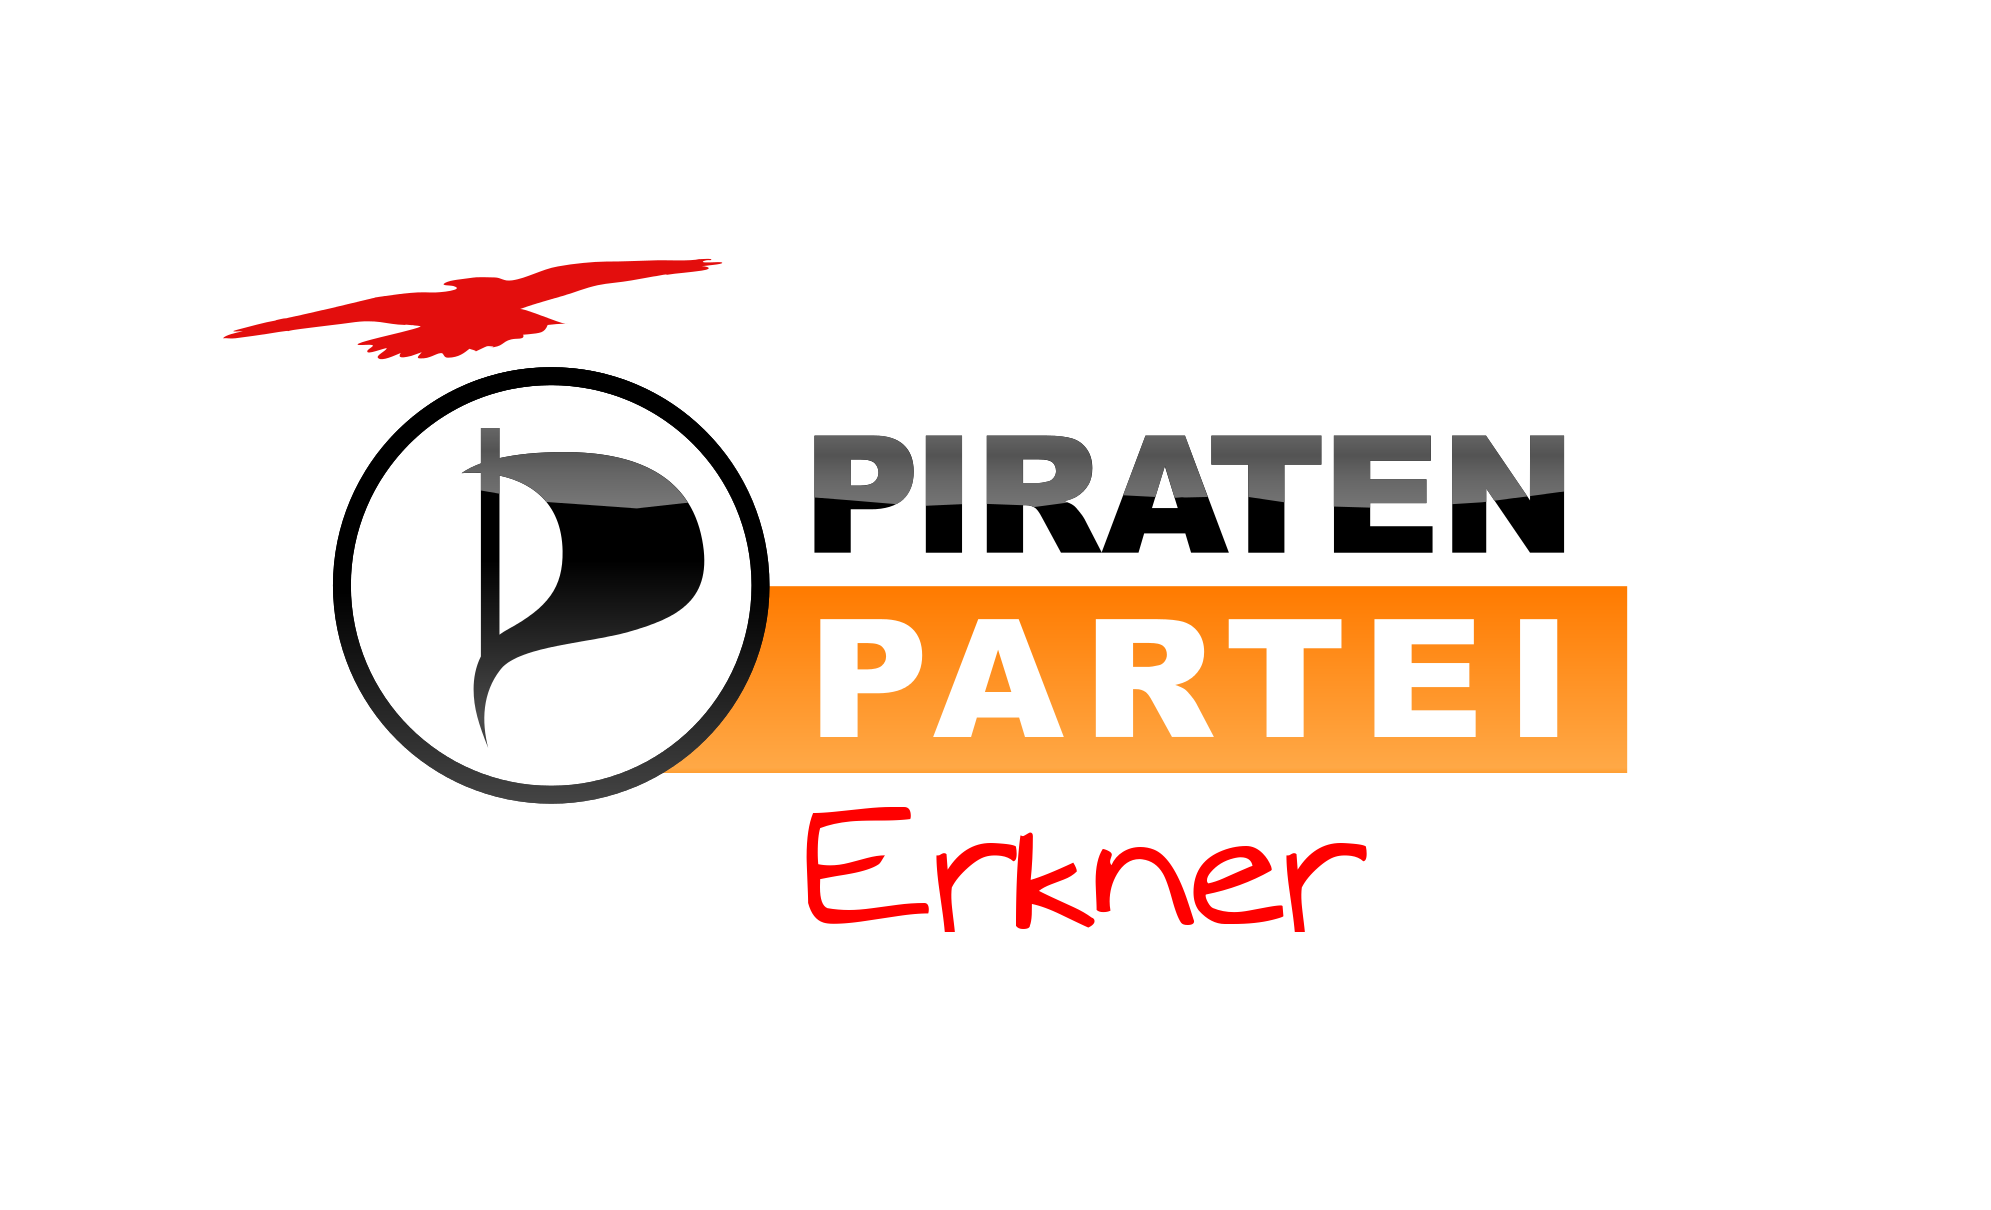 Erkner